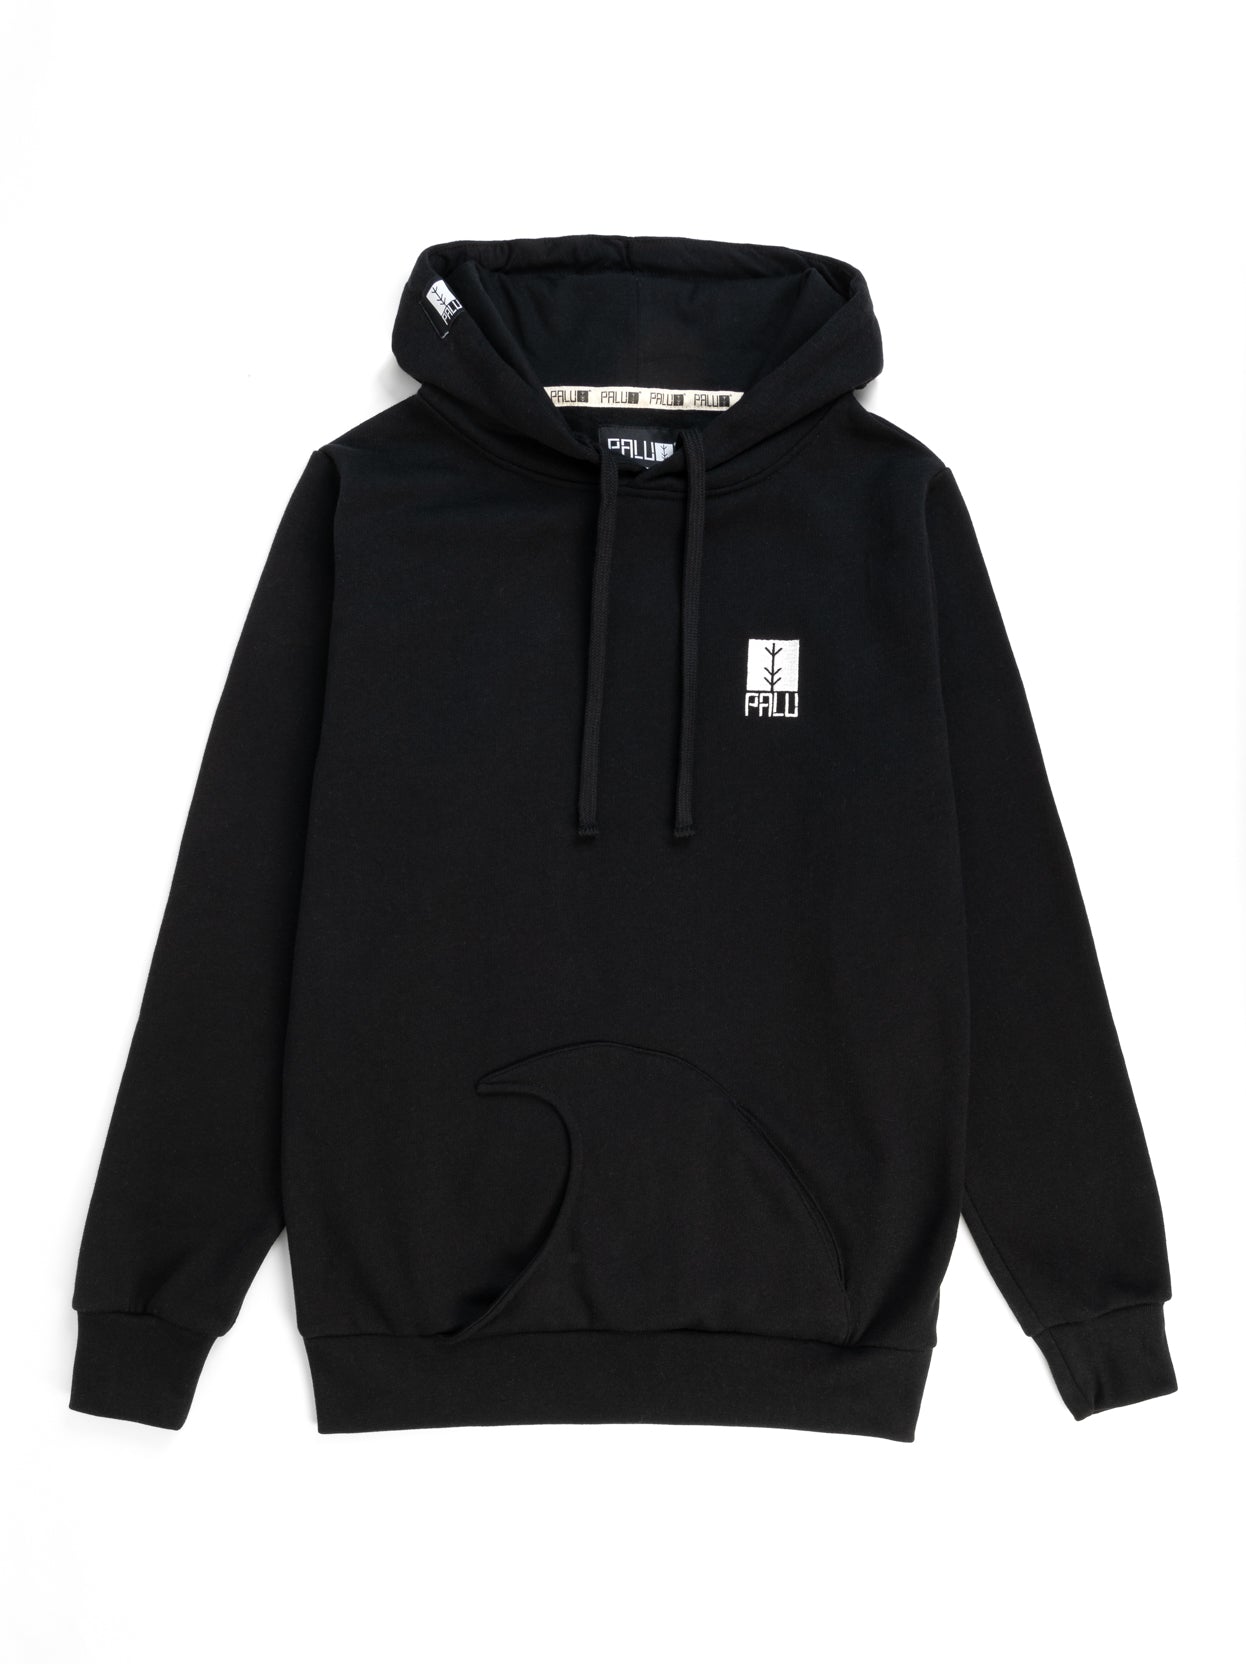 Black wave hoodie front